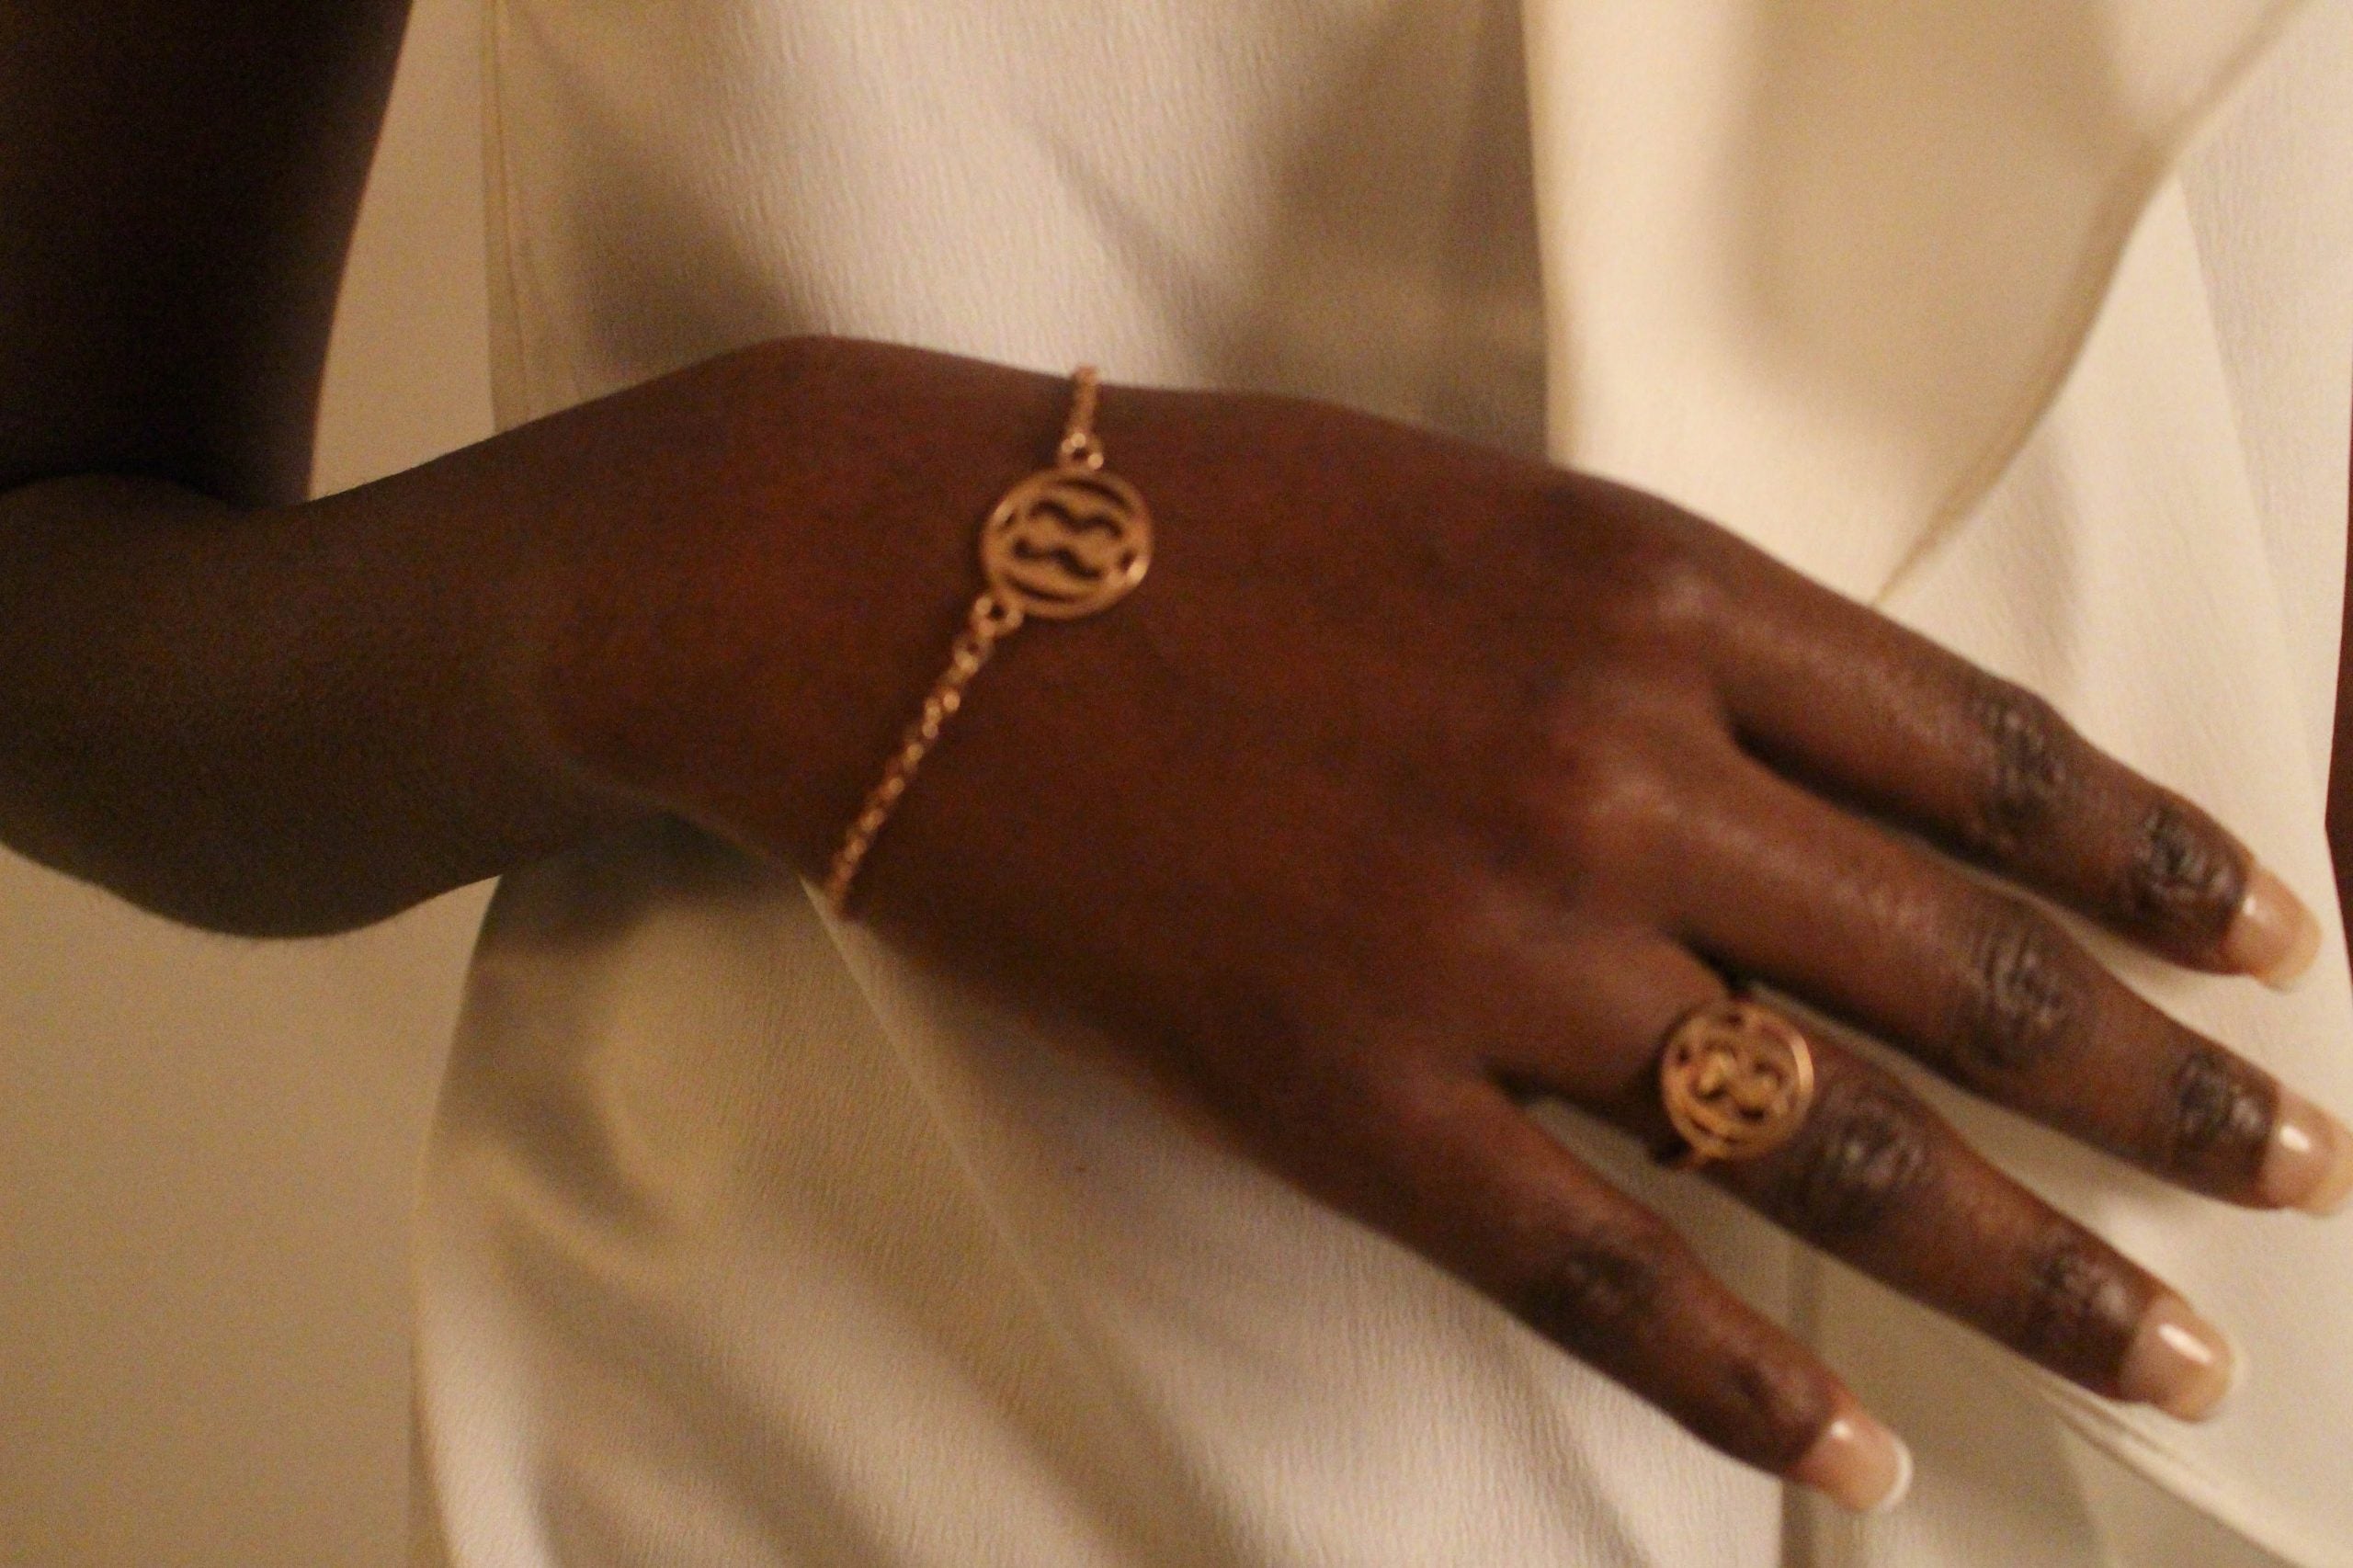 family bracelet and ring (Nkonsonkonson)